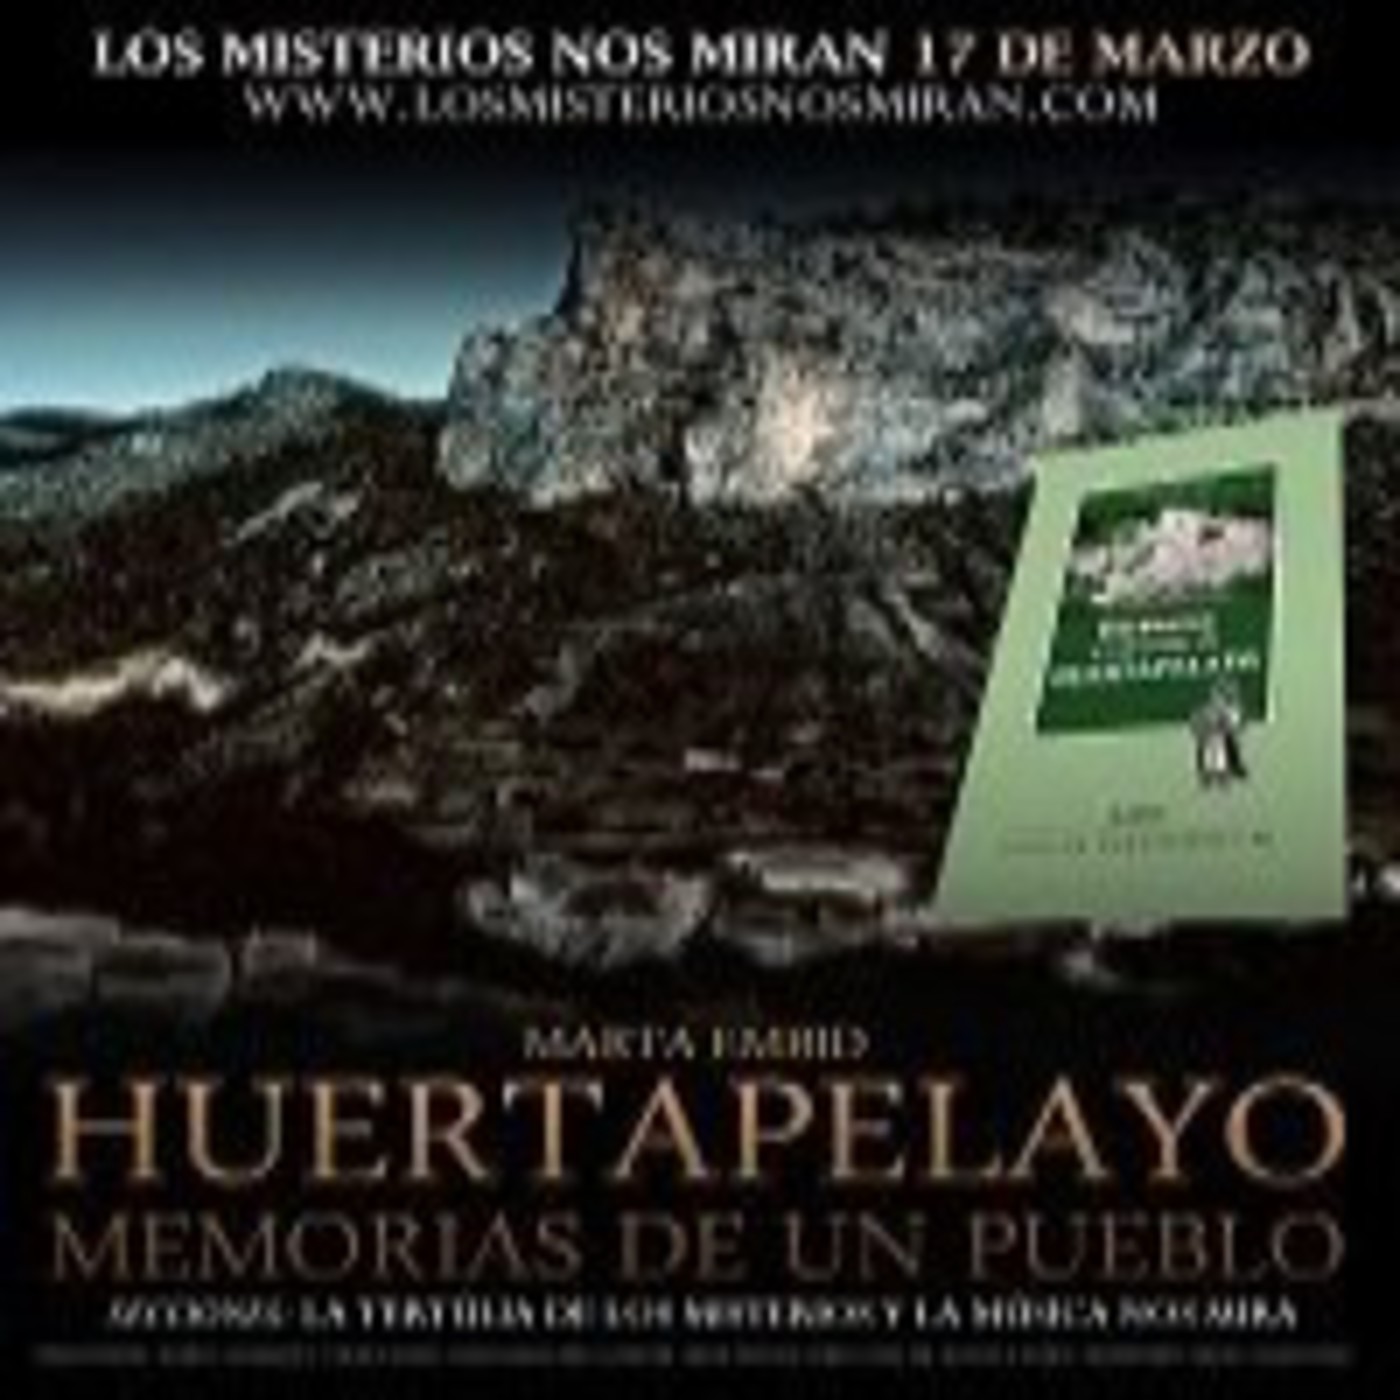 Programa 119: 'Huertapelayo, memorias de un pueblo' y 'Las músicas nos miran'